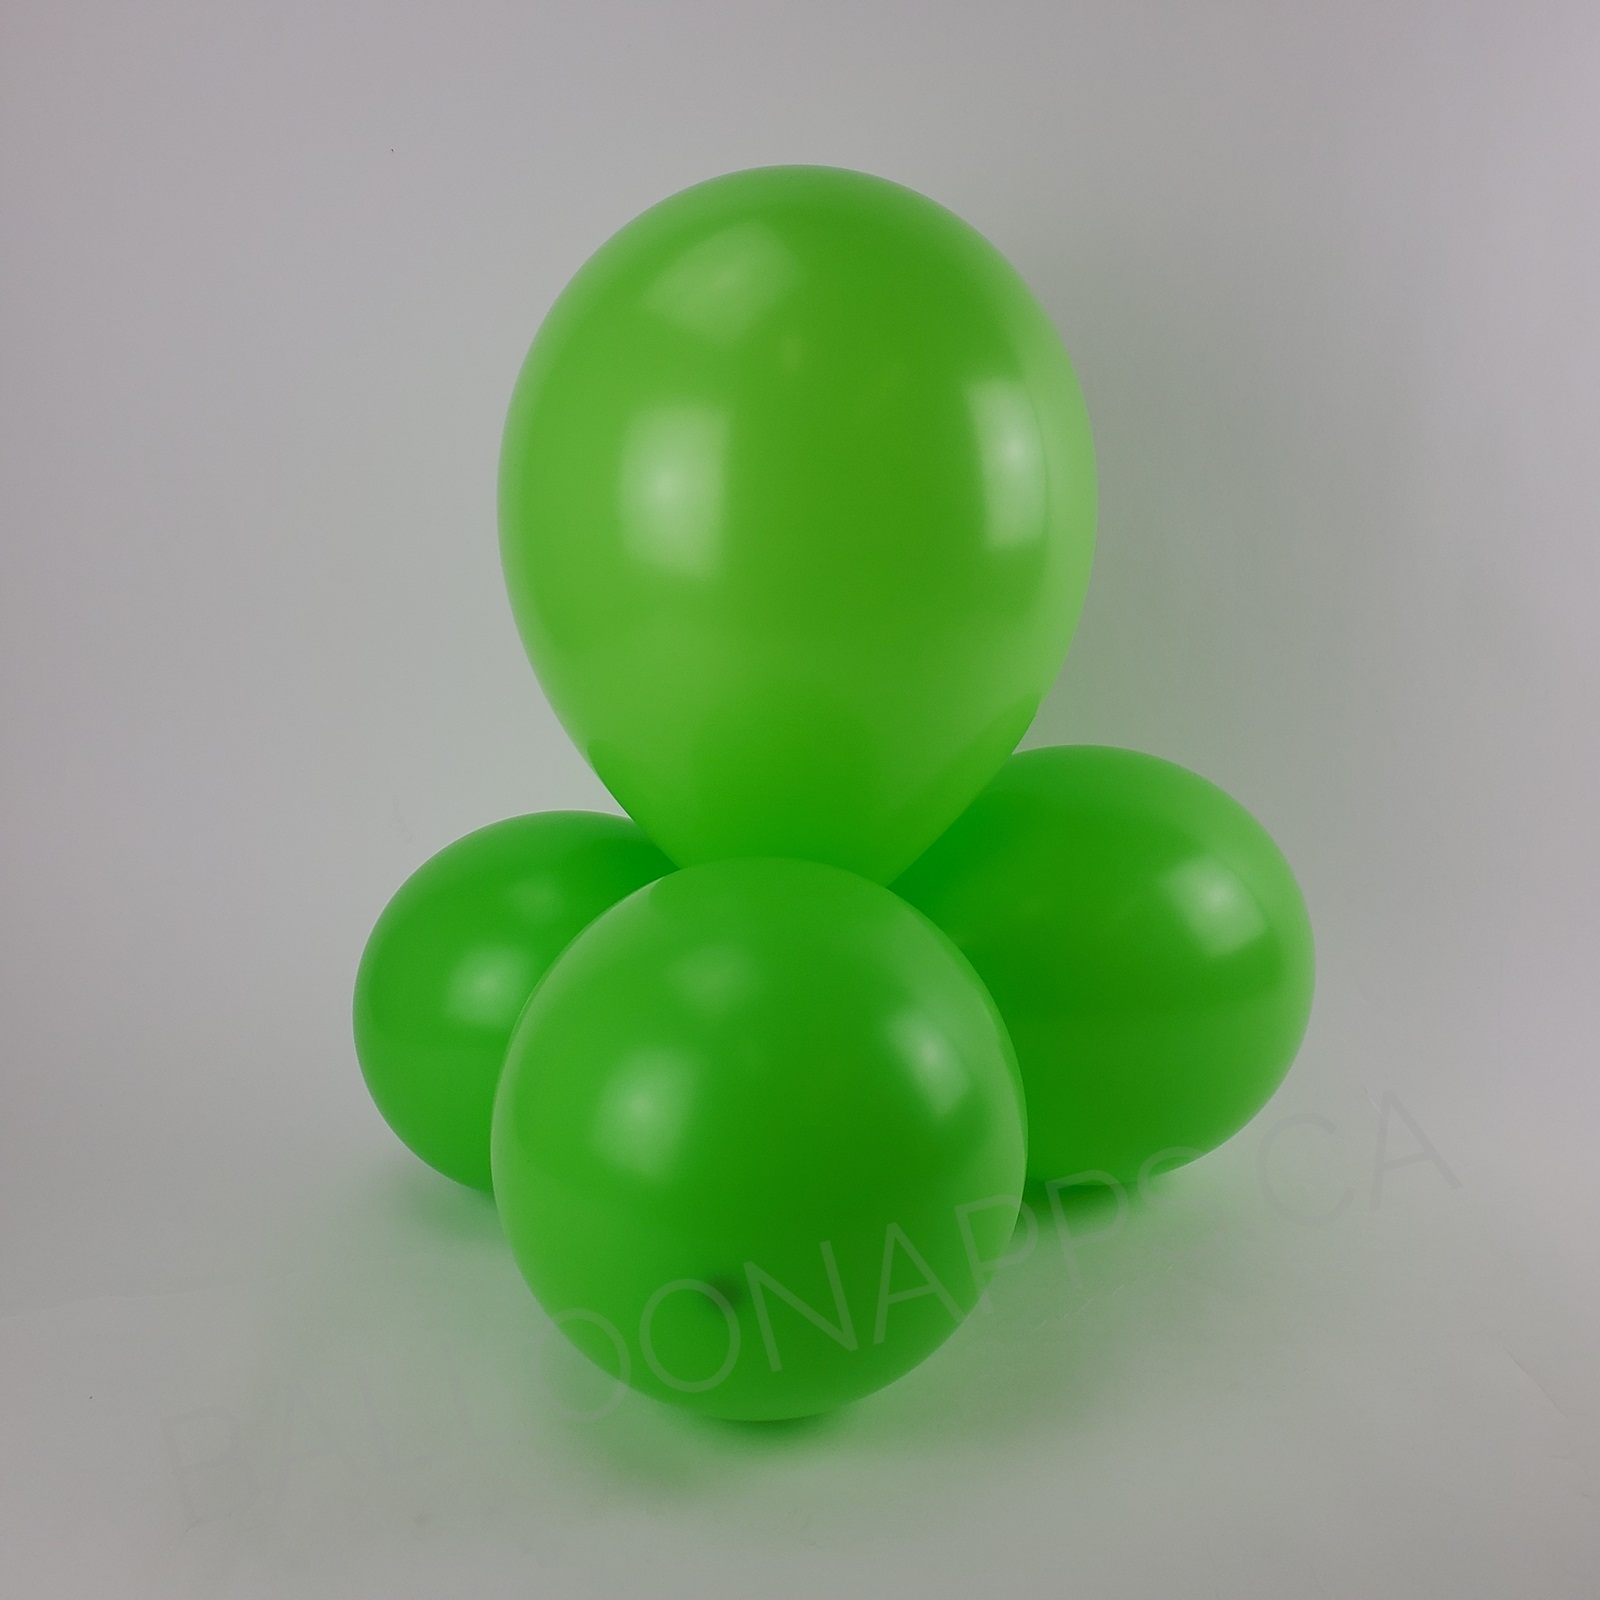 balloon texture Sempertex 260 Key Lime